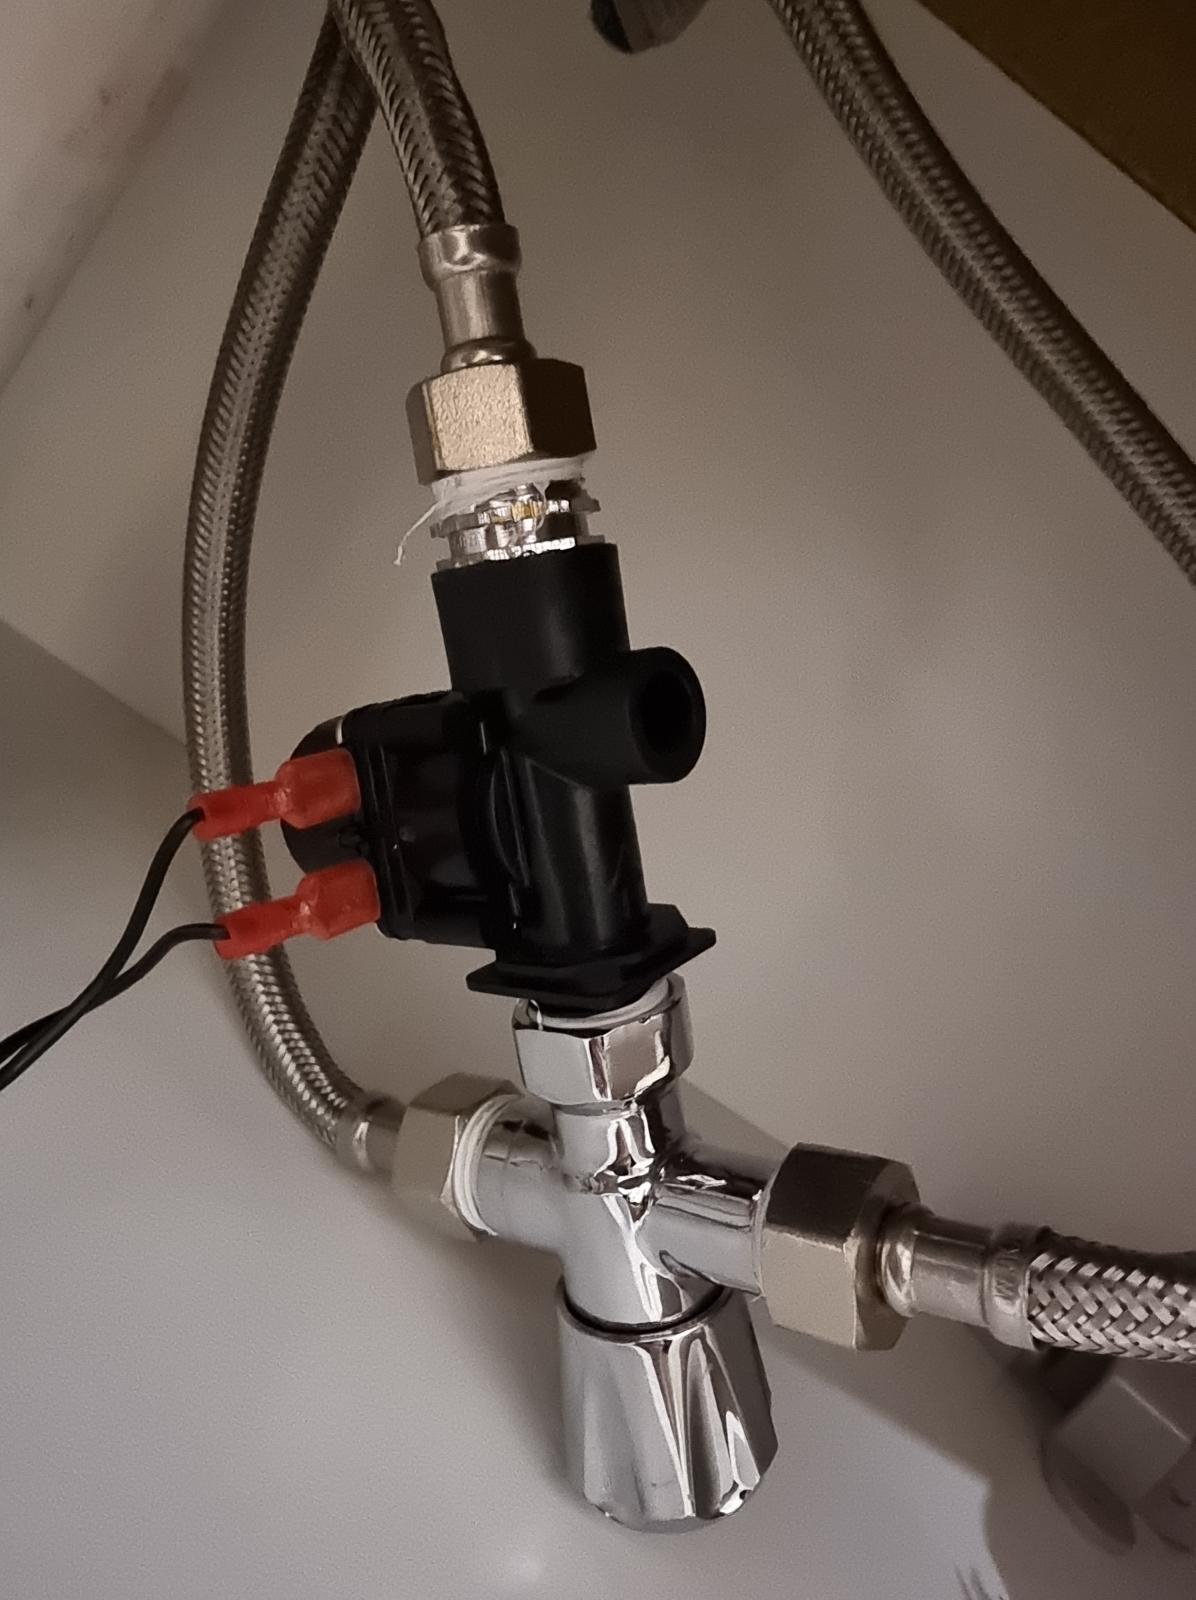 Mixed sensor tap - options to control temperature?